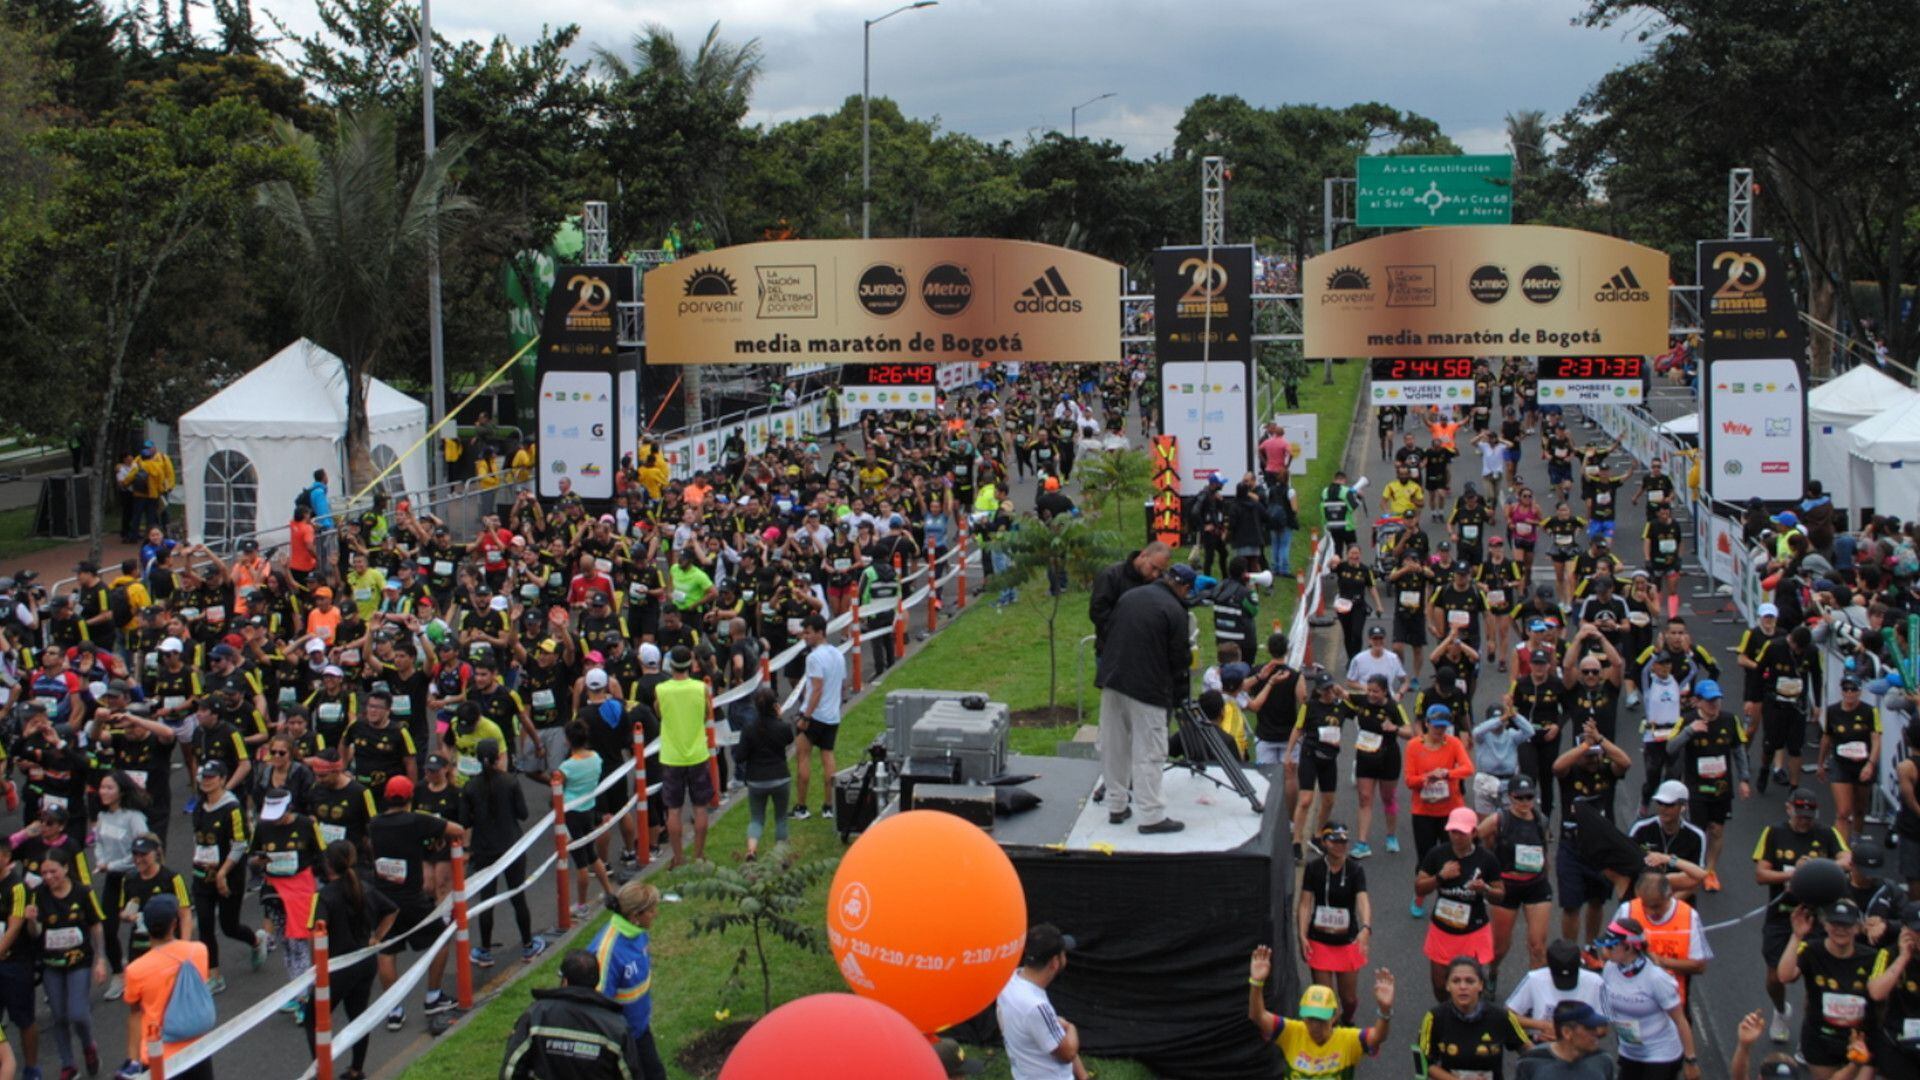 35.000 atletas participarán en la Media Maratón de Bogotá este domingo 2 de octubre. Foto: Media Maratón de Bogotá